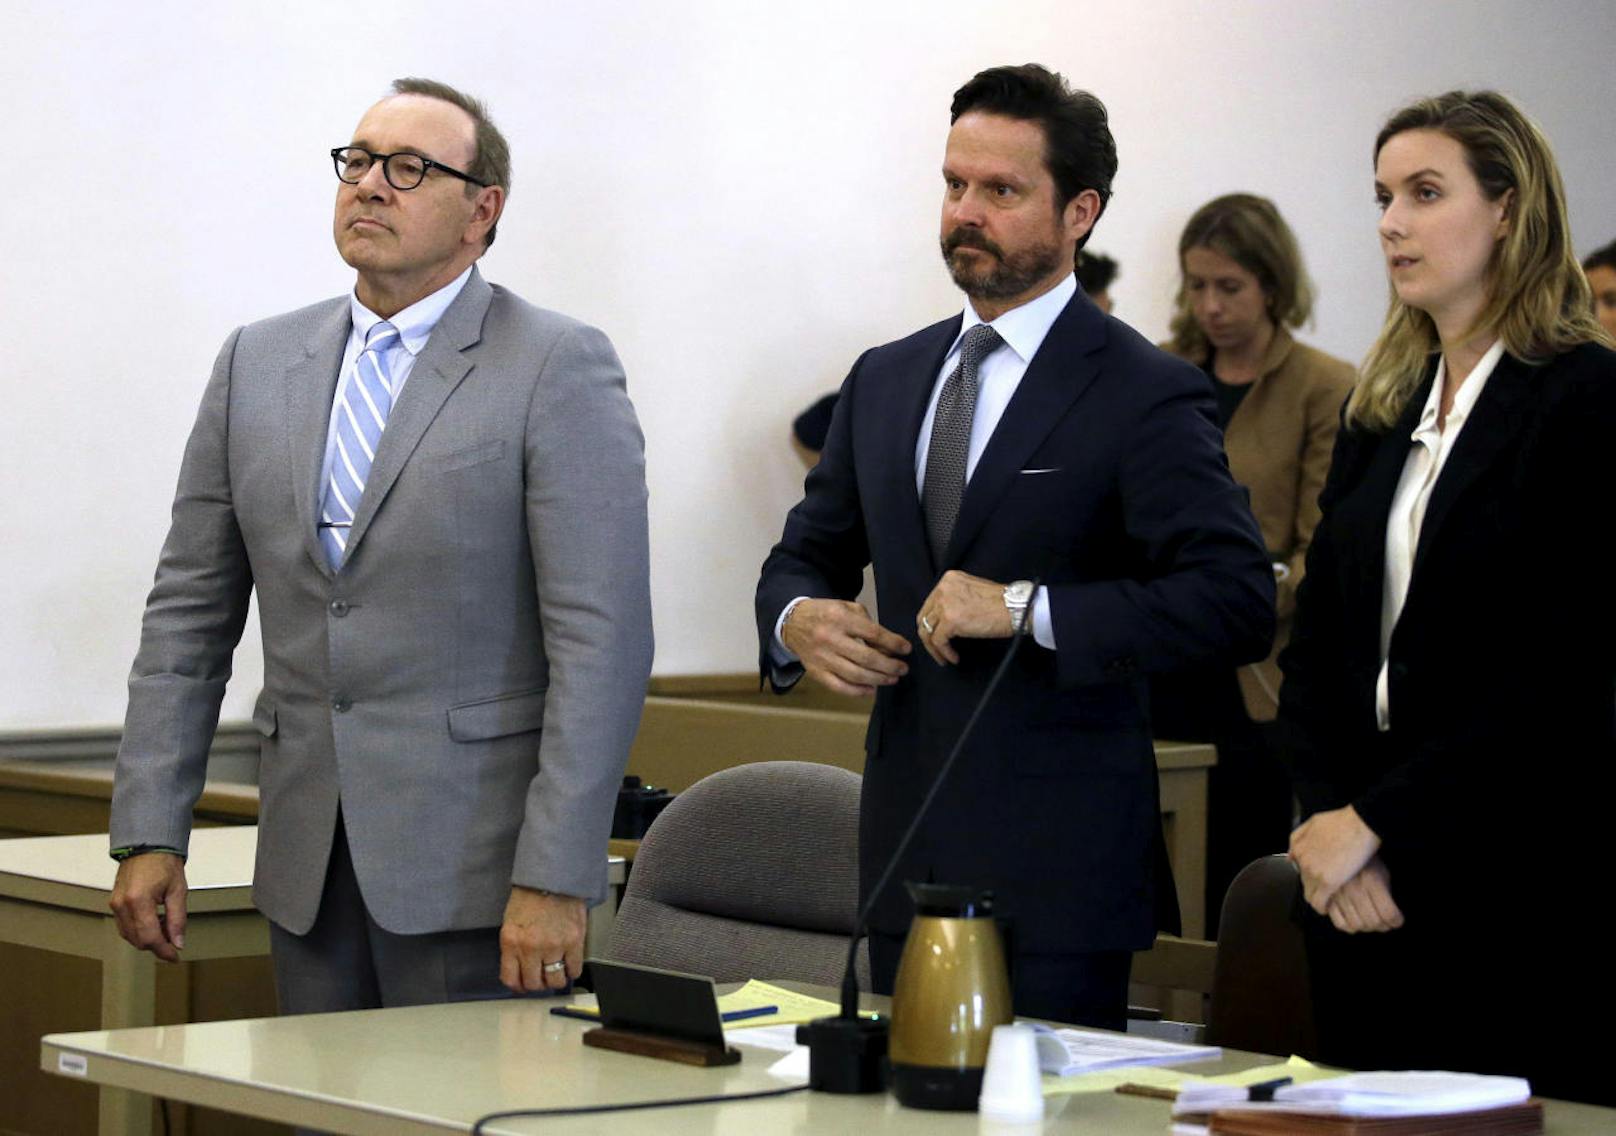 Kevin Spacey mit seinem Anwalt Alan Jackson bei einer Anhörung vor Gericht am 3. Juni 2019.